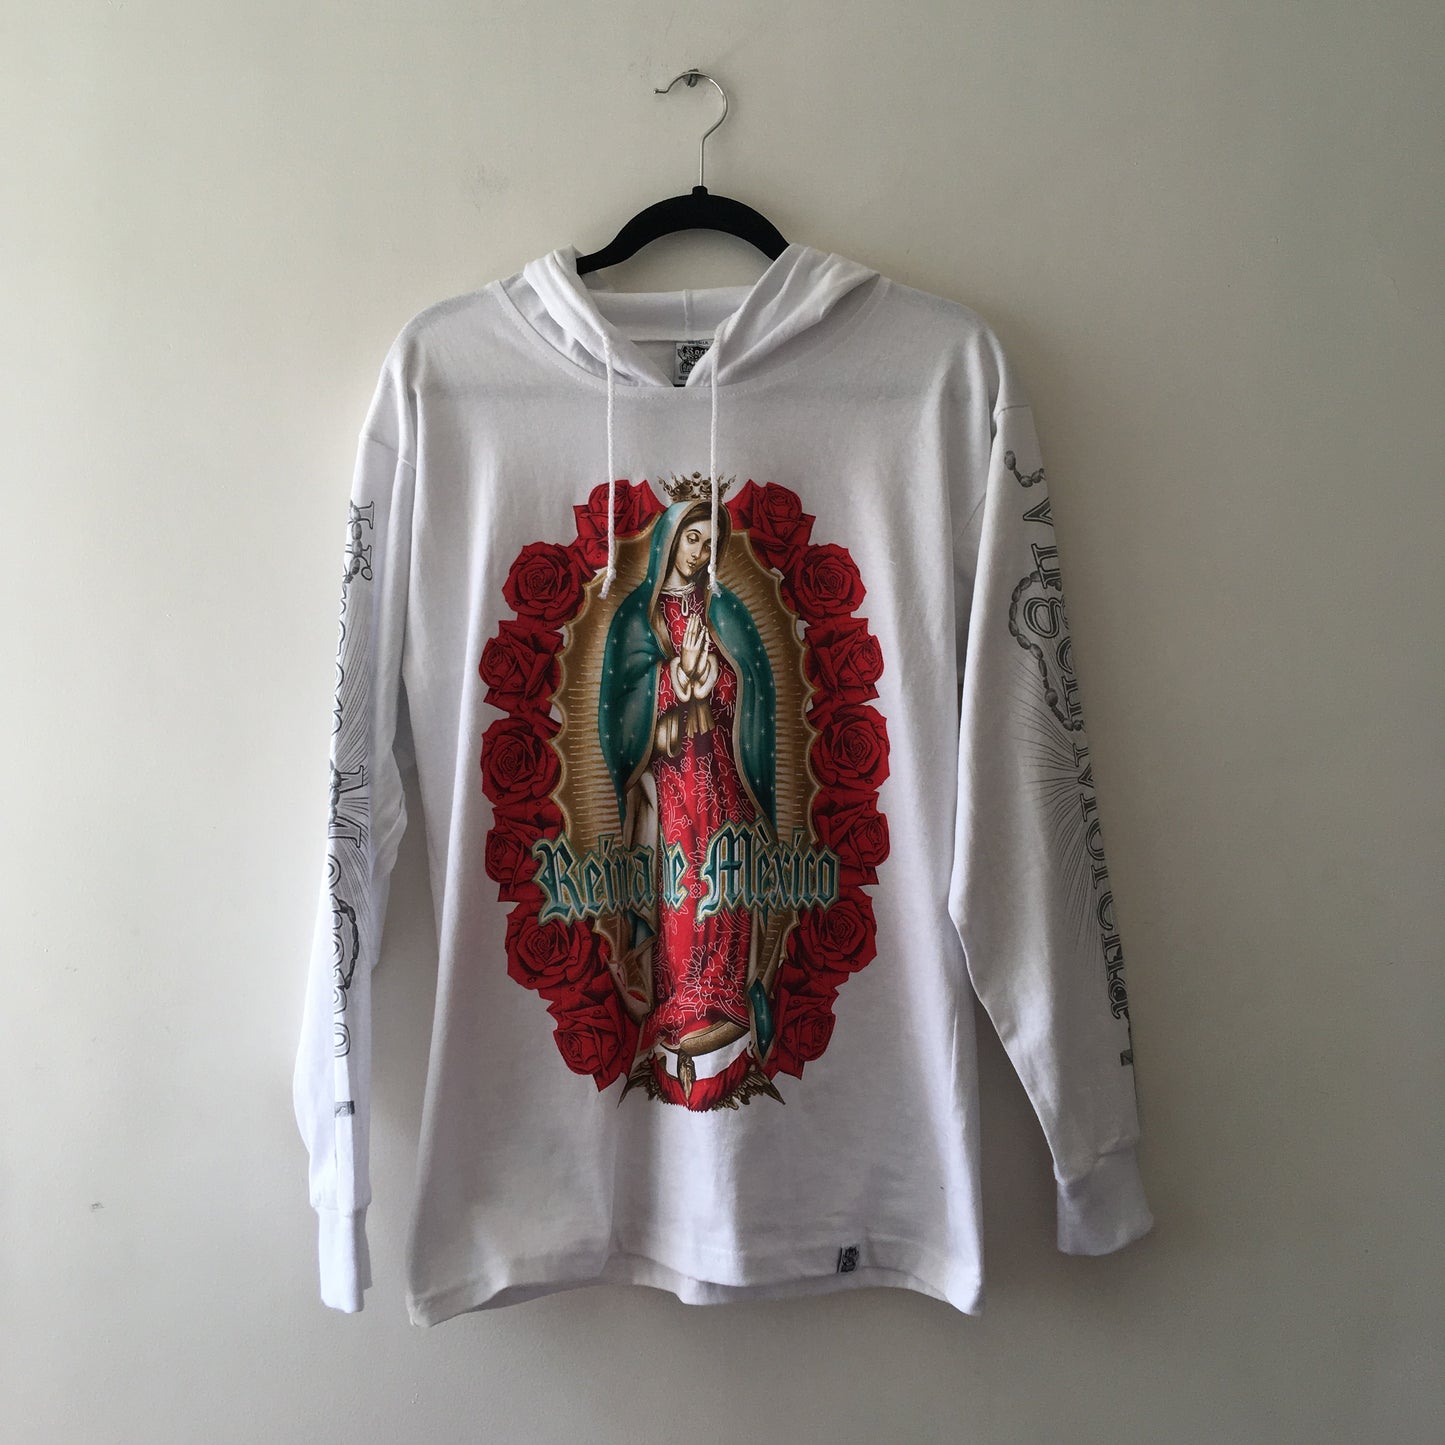 Queen of Mexico T-shirt/Sweatshirt